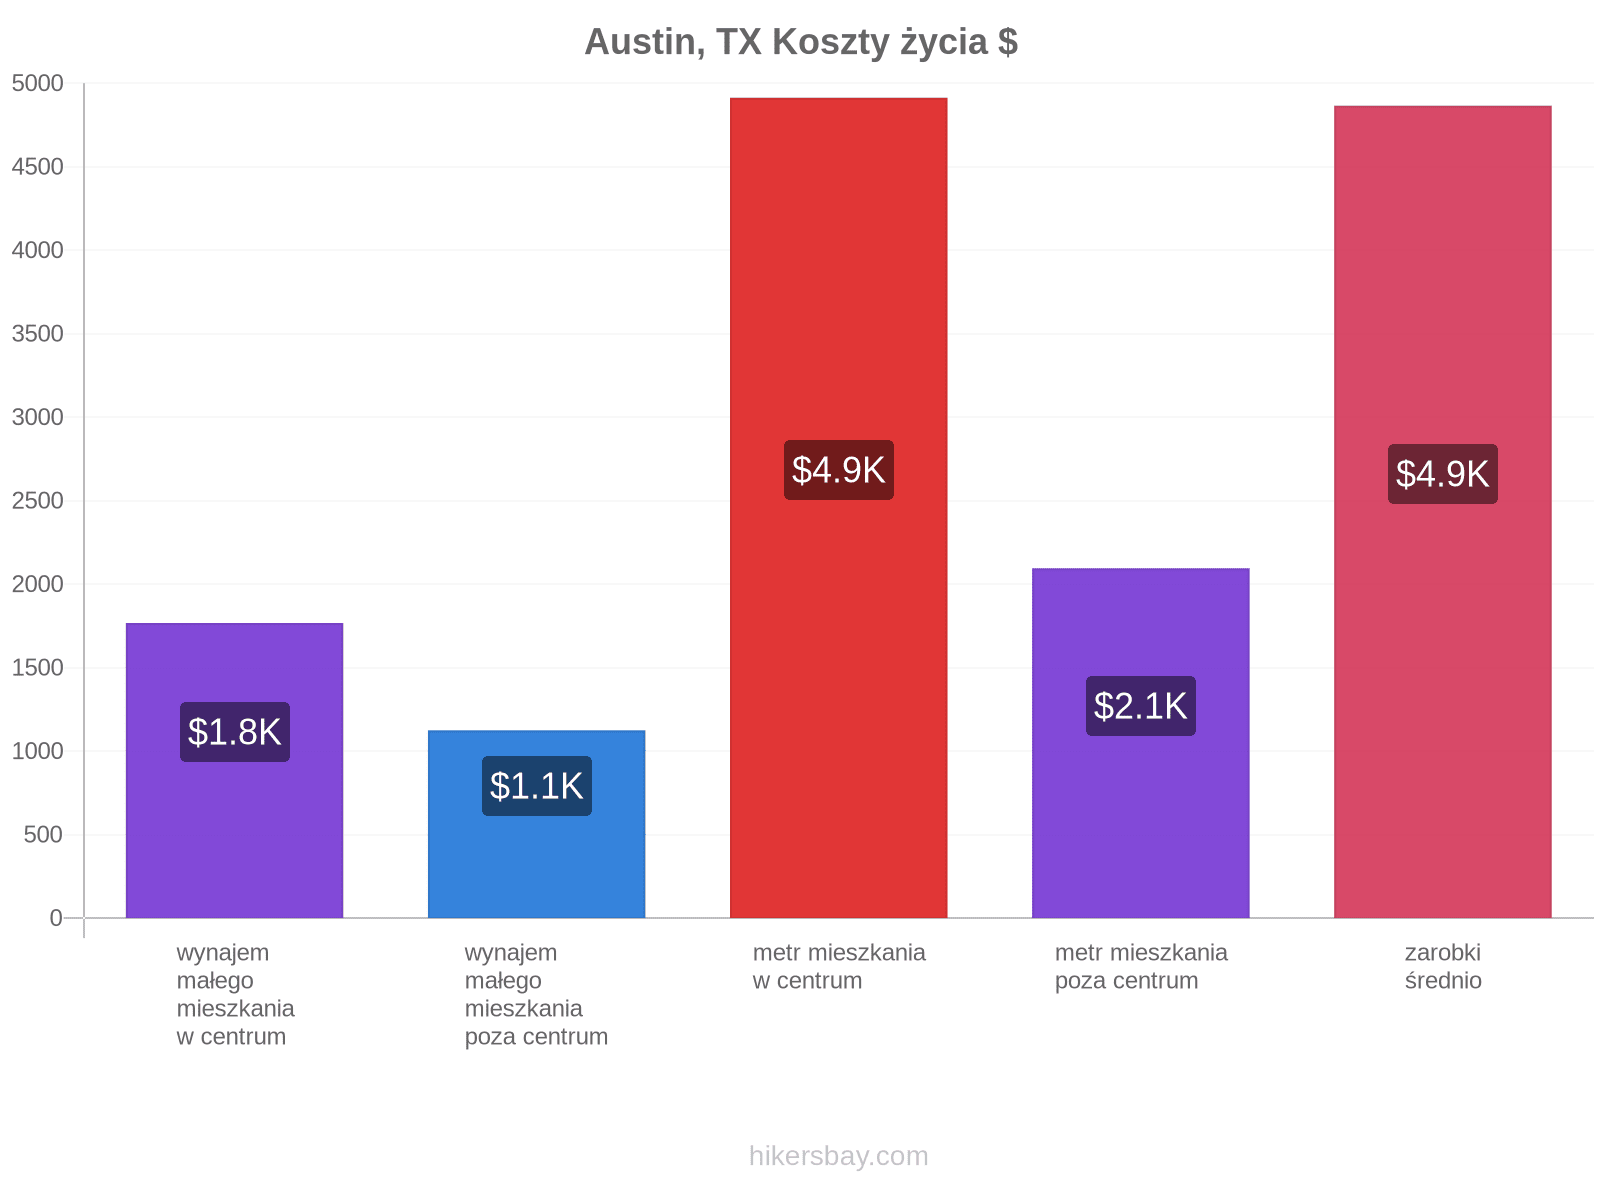 Austin, TX koszty życia hikersbay.com